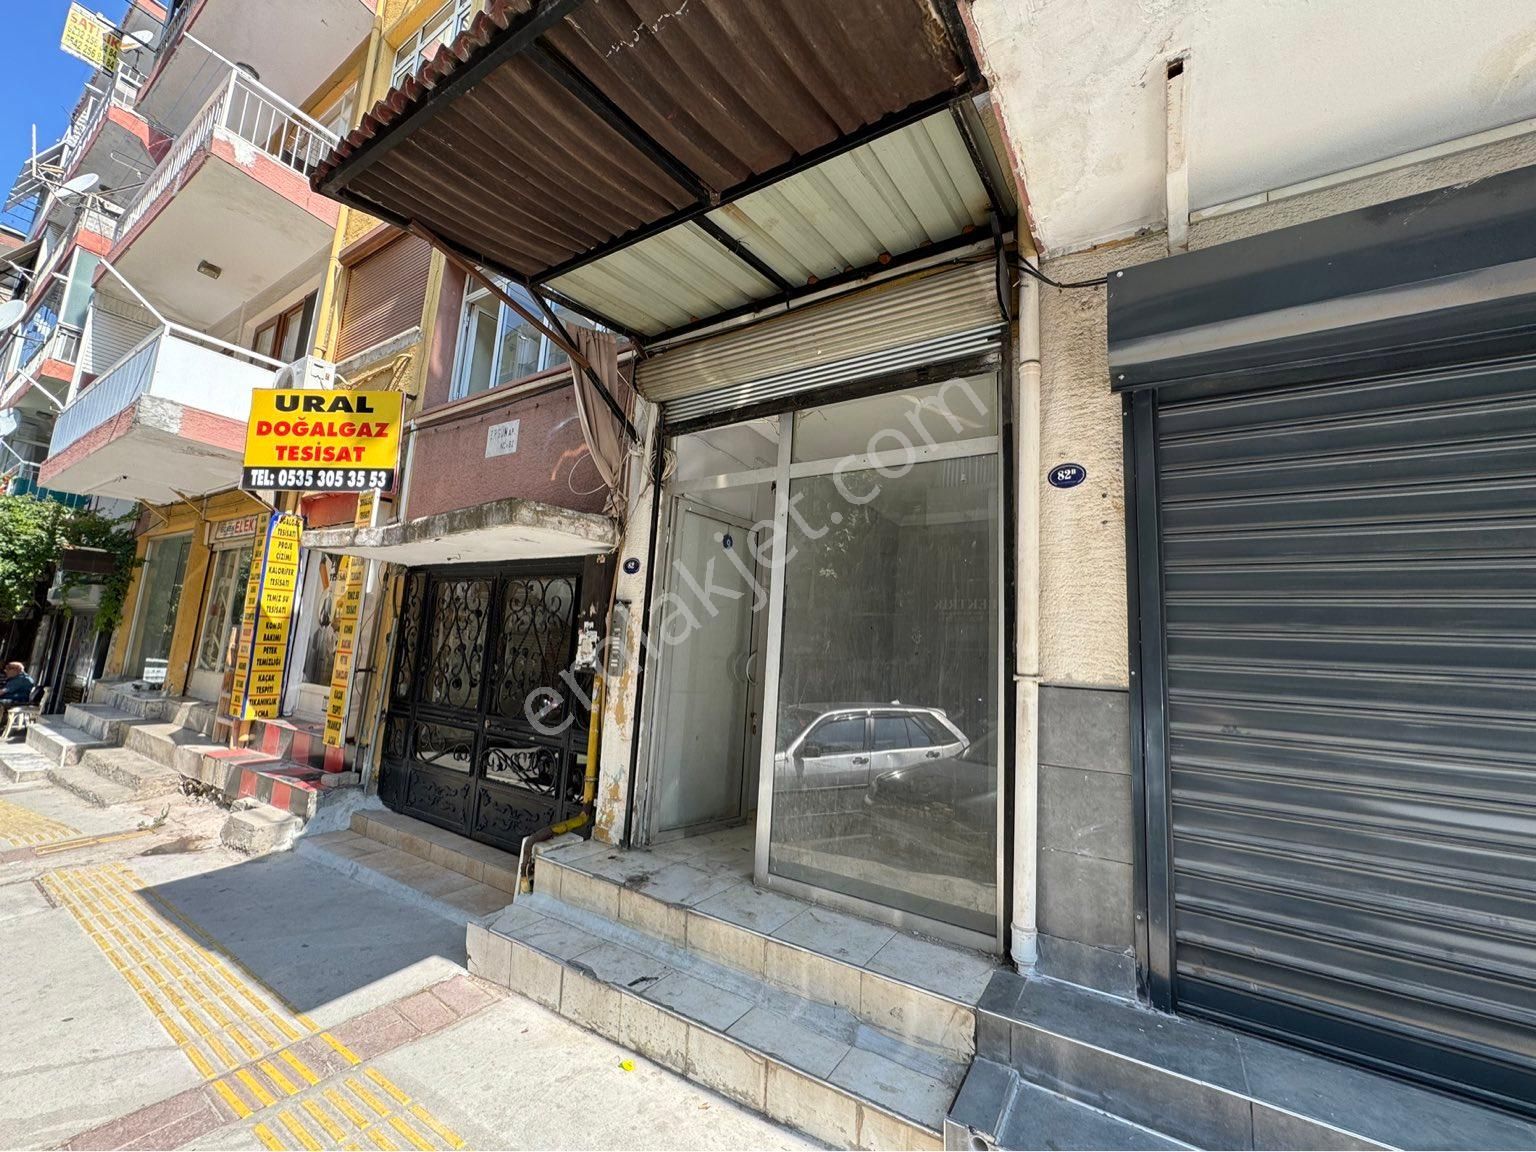 İzmir Konak Kiralık Dükkan & Mağaza  MERKEZE 3 DAKİKA BETONYOL CADDESİ ÜZERİ KİRALIK DÜKKAN